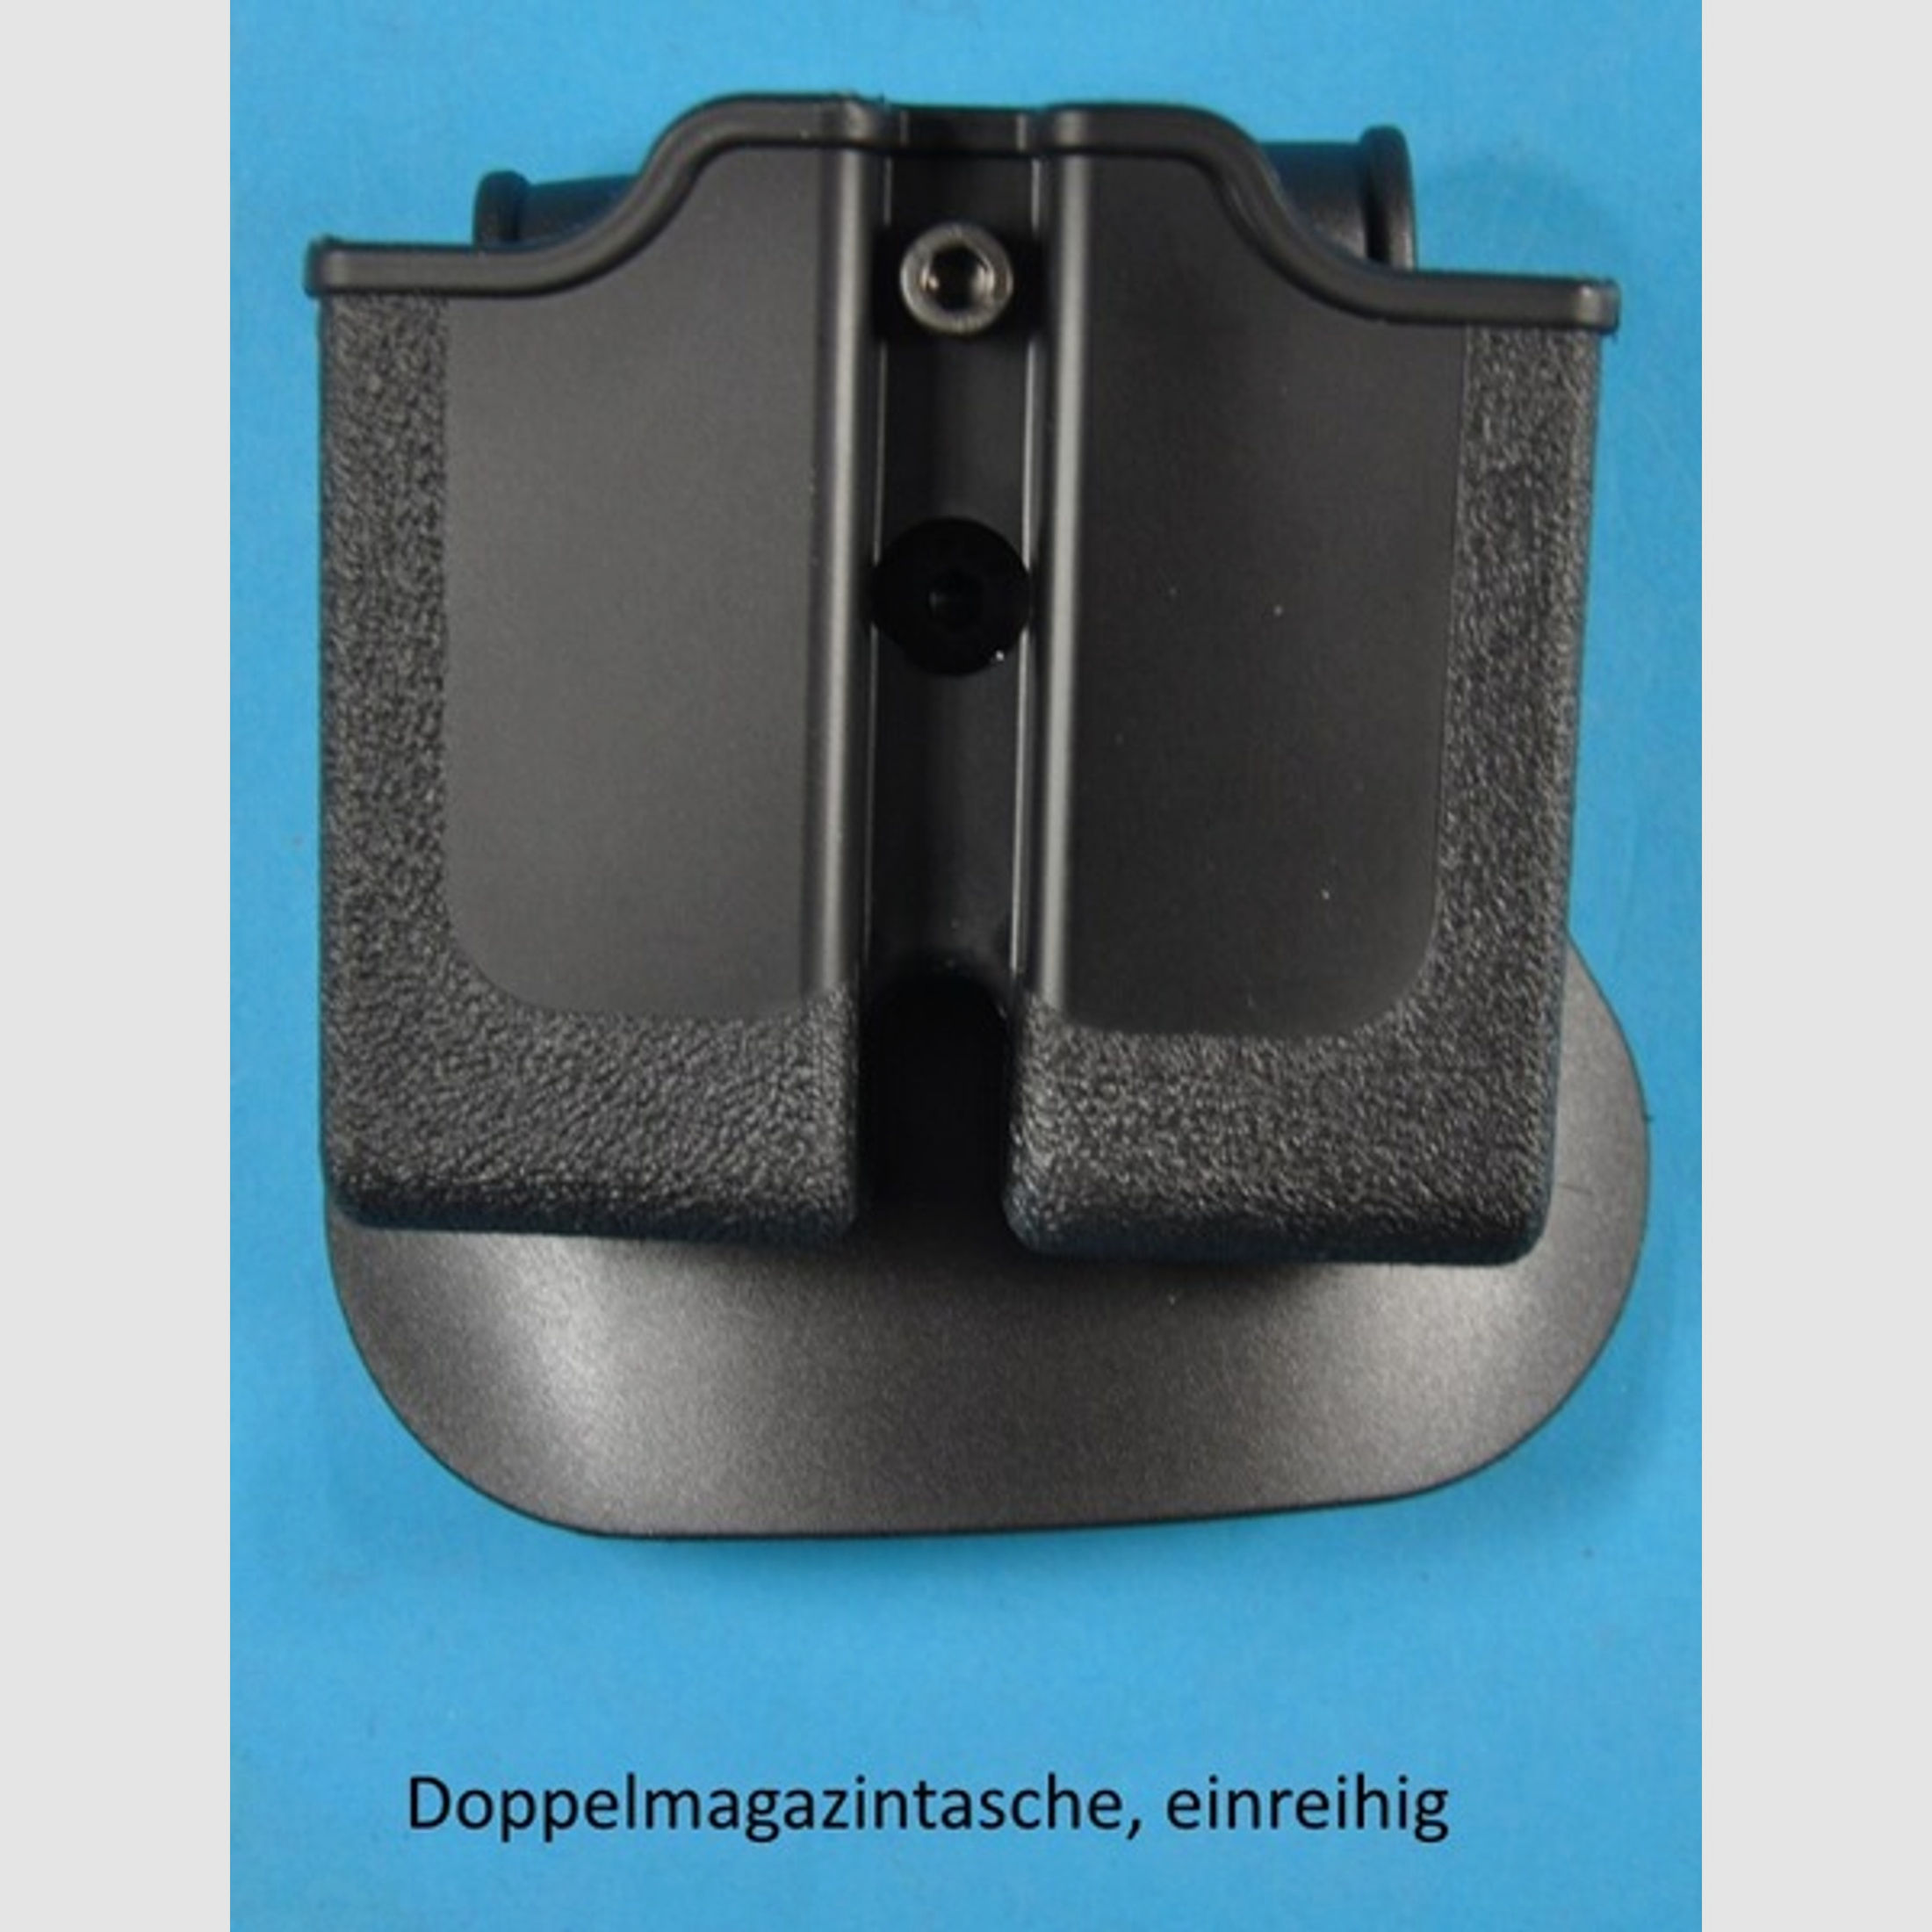 schwenkbare Paddle-Doppel-Magazintasche für Colt 1911, Sig Sauer P220, S&W 4506, 4516 u.s.w.